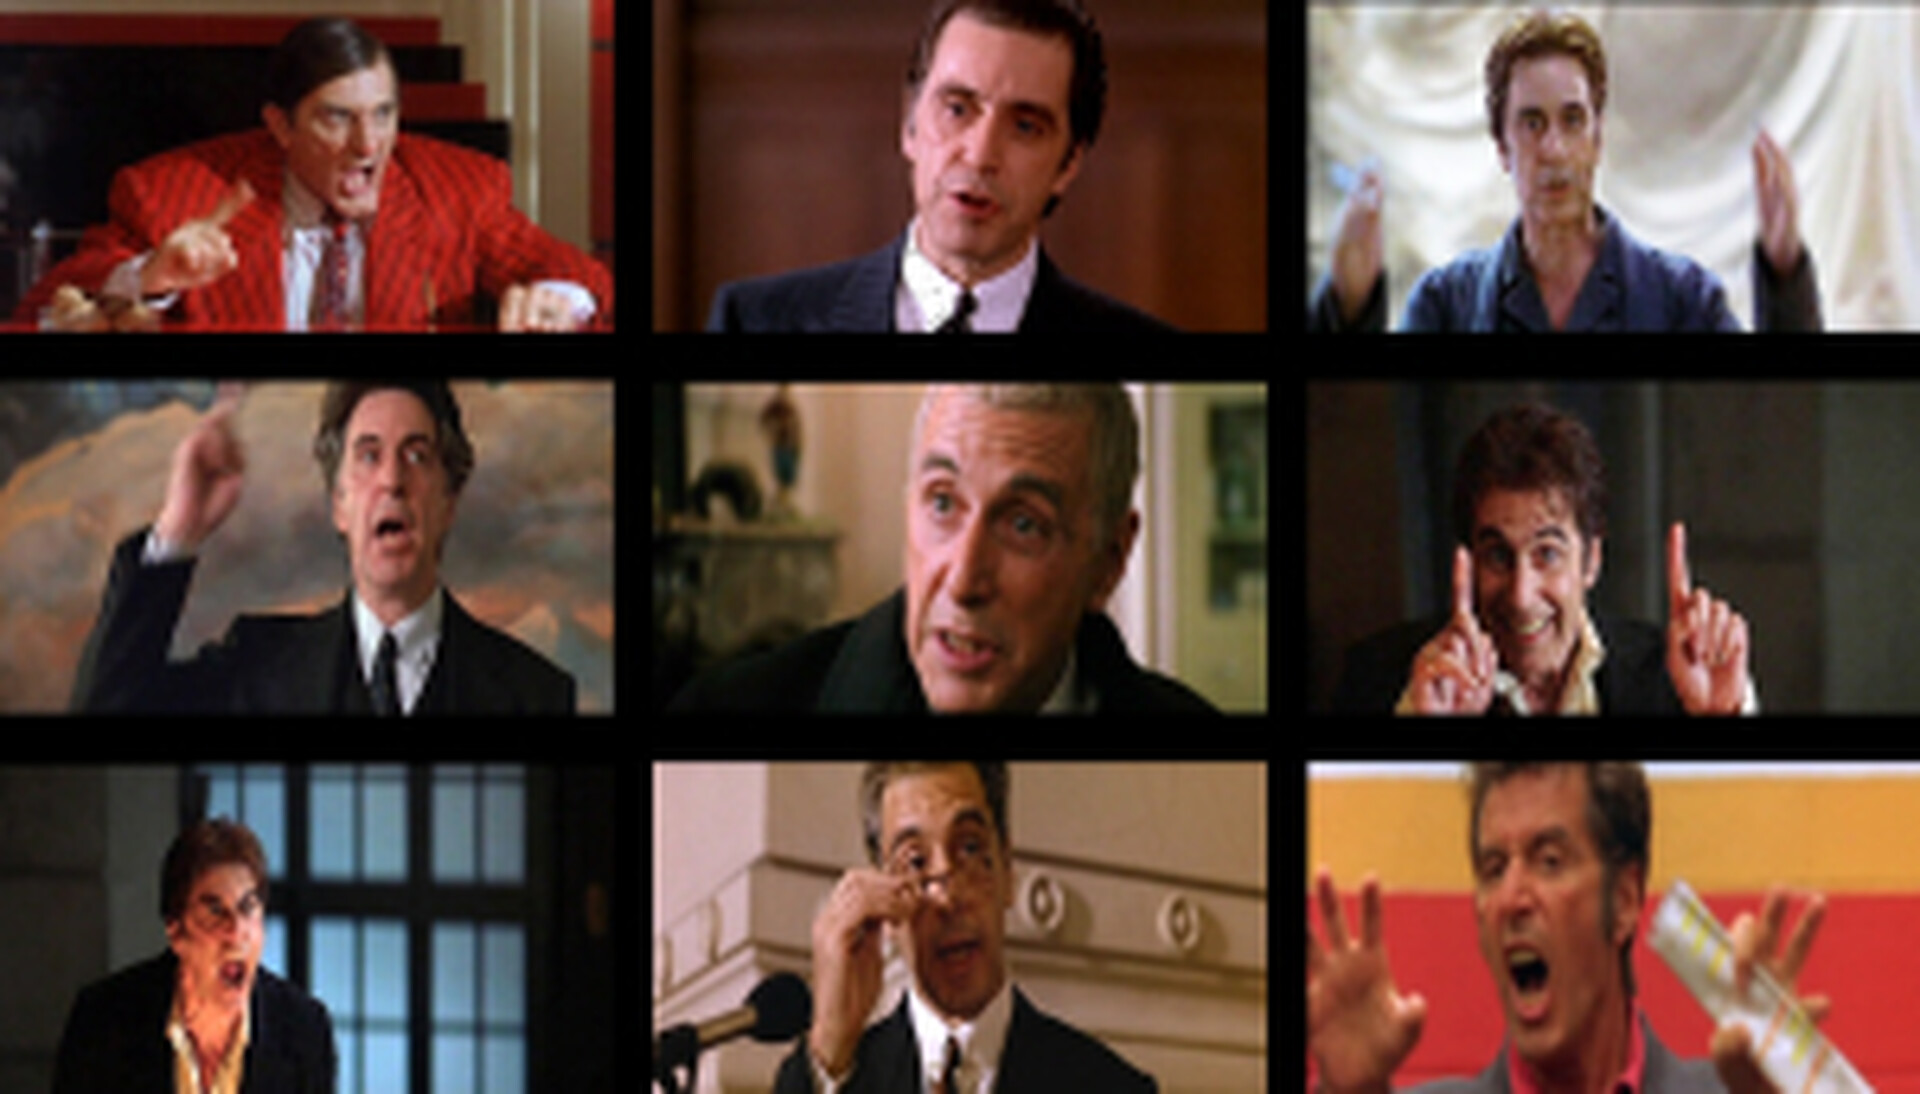  Sekwencja kadrów z filmu Bogny Burskiej Shooting Star (2006-2008). 9 kadrów z różnych filmów, z których każdy przedstawia postać graną przez Ala Pacino, ale oczywiście za każdym razem jest to inna postać. 